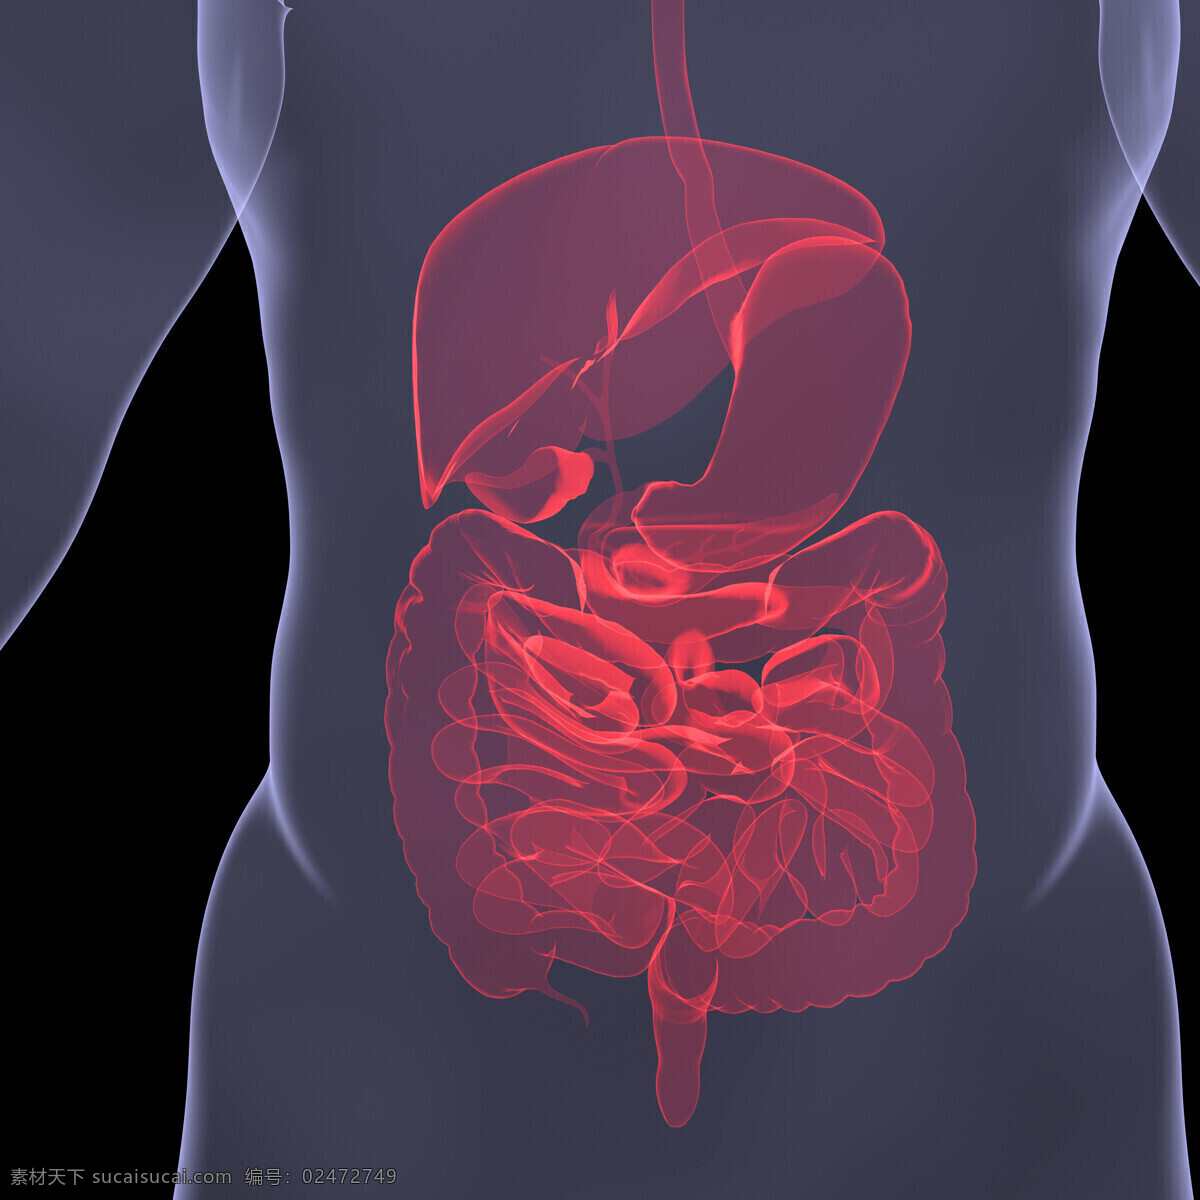 人体 内脏 器官 肠 肝脏 胃部 人体内部器官 医疗科学 医学 人体器官 医疗护理 现代科技